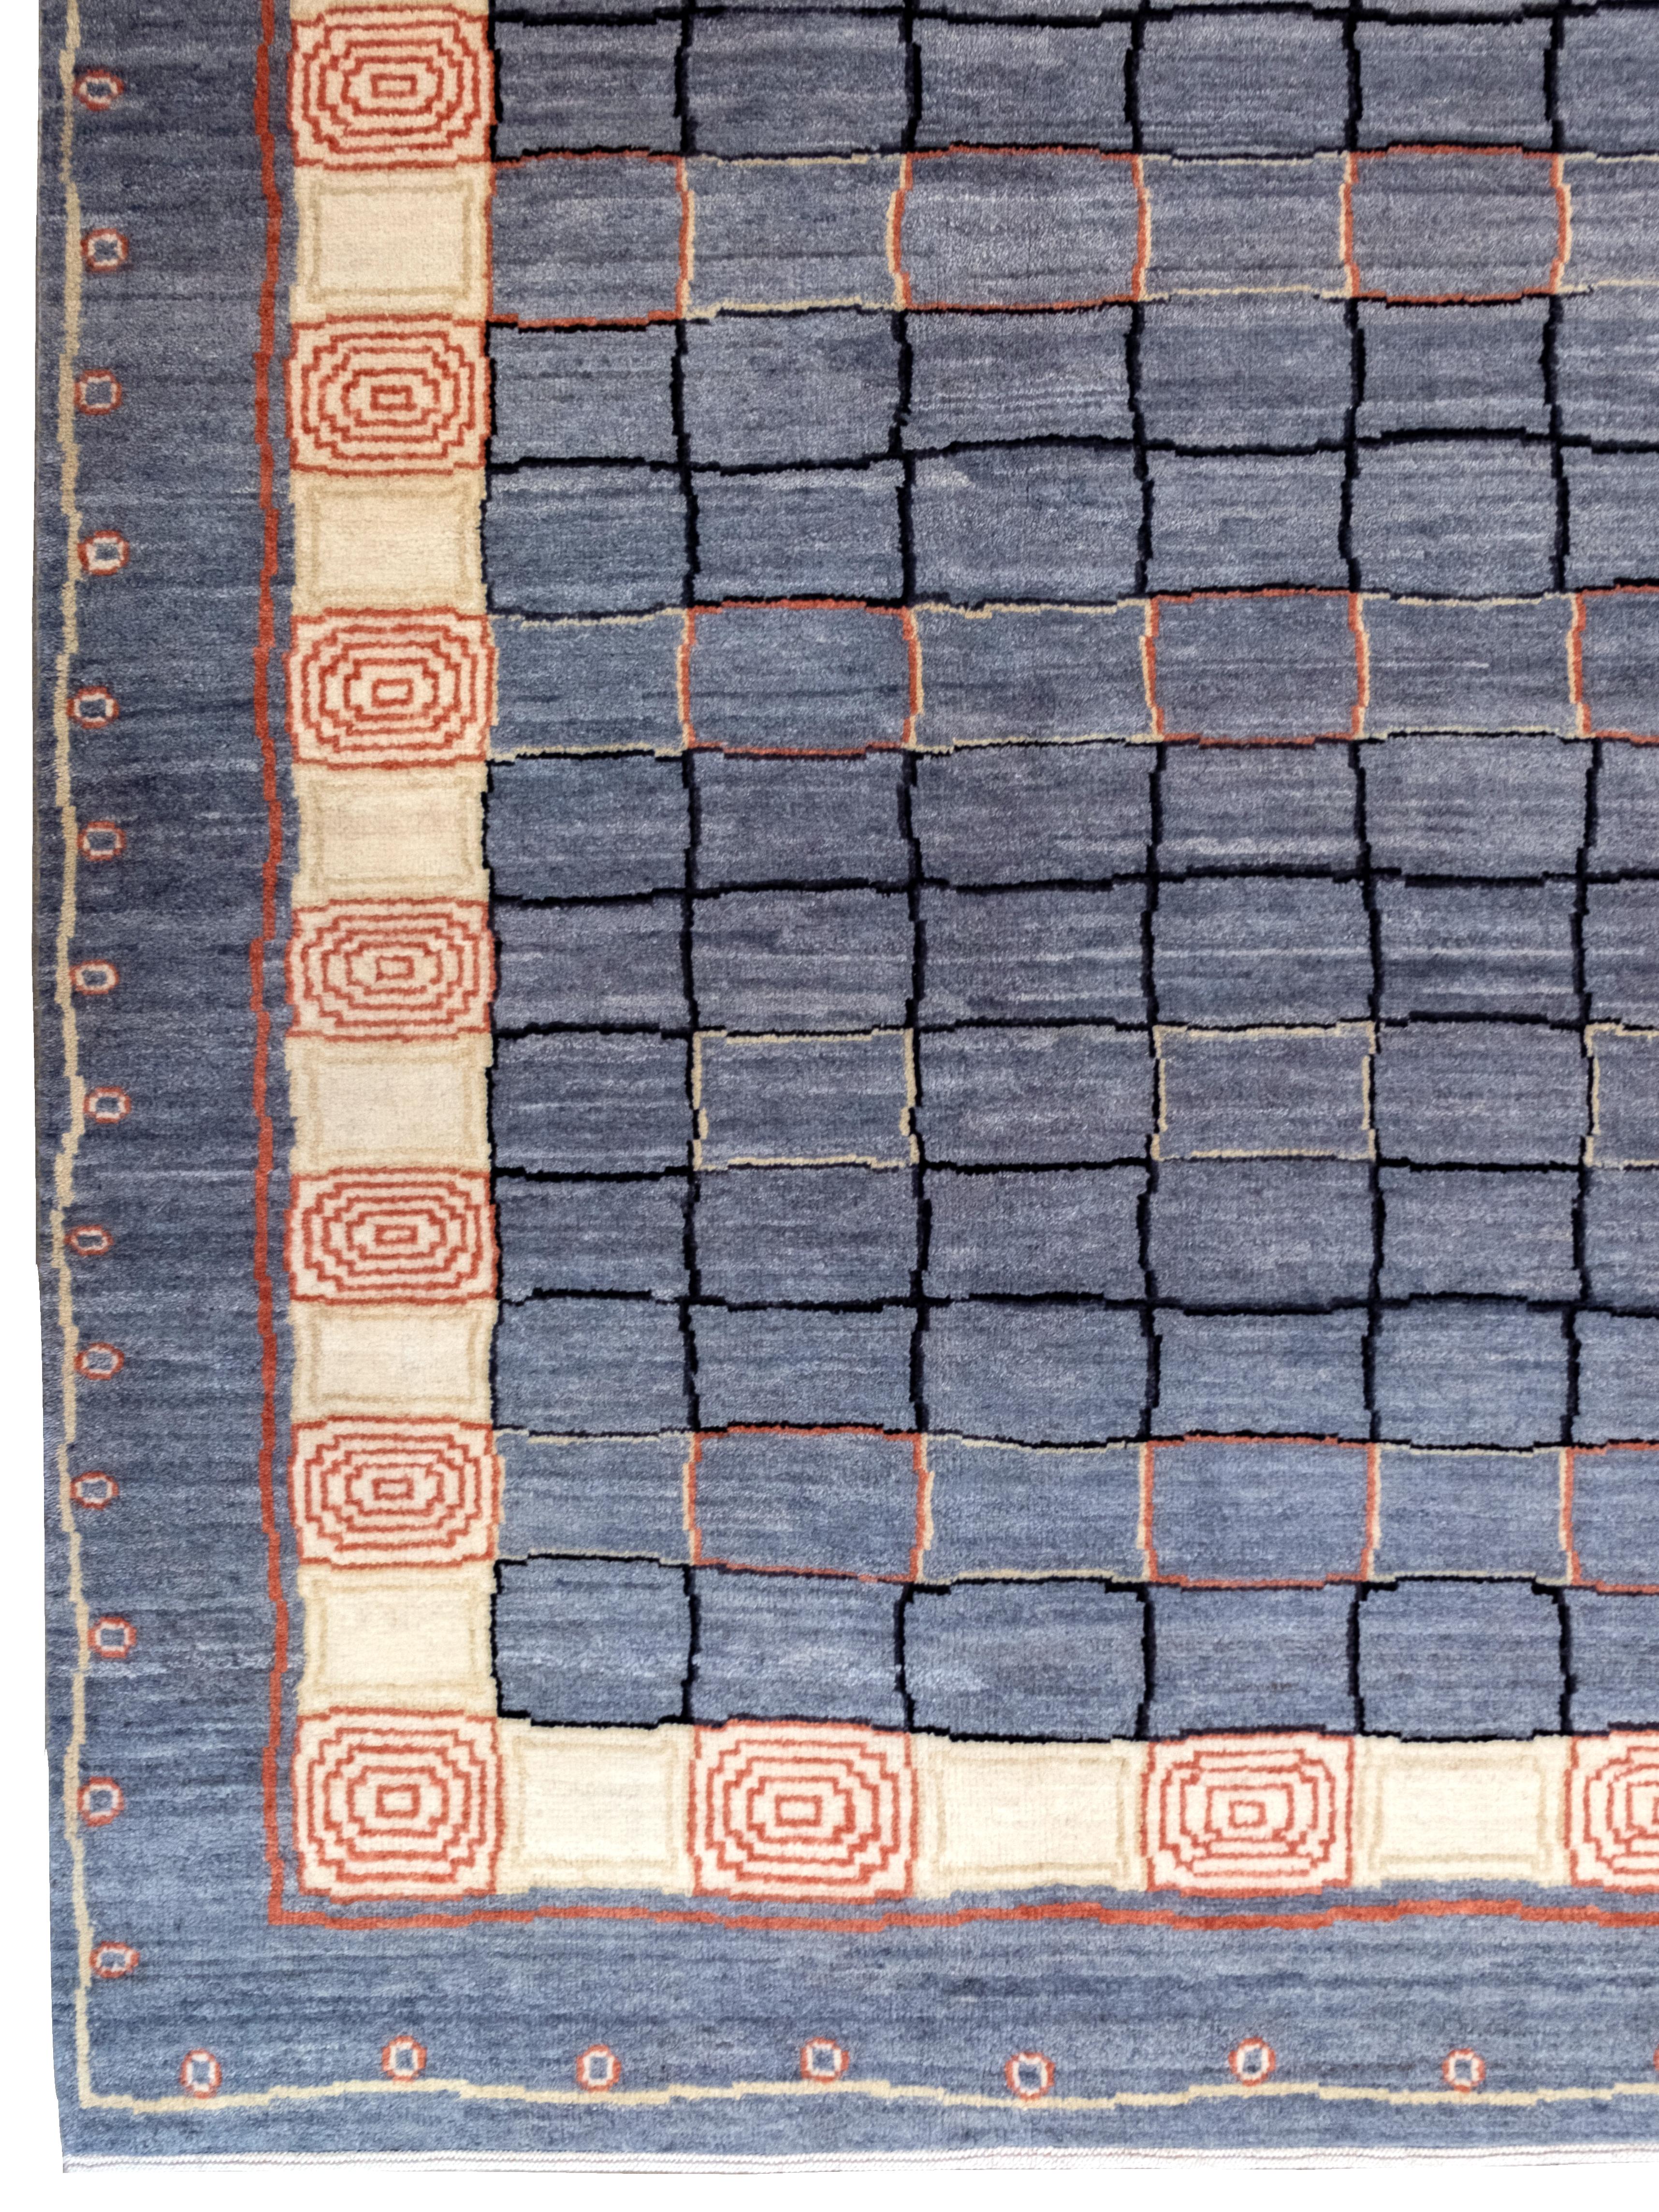 Perse Orley Shabahang's Ionic Gabbeh Geometric Shag Carpet in Gray and Cream (Tapis à poils longs géométriques gris et crème) en vente